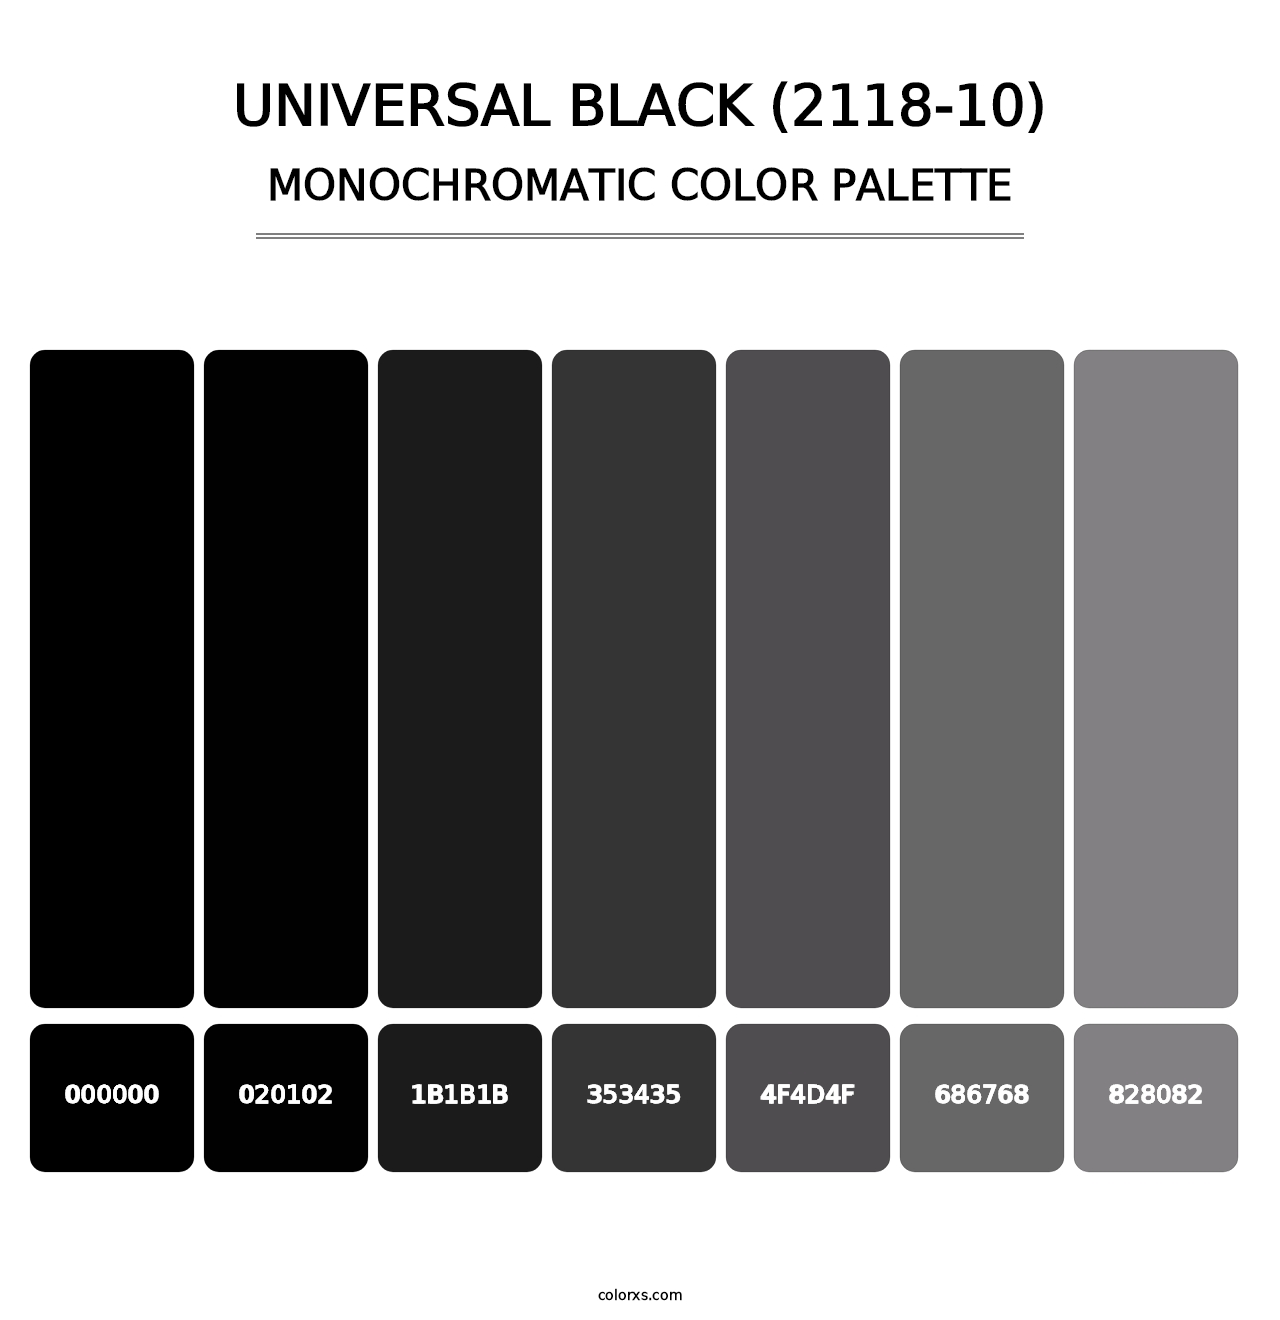 Universal Black (2118-10) - Monochromatic Color Palette